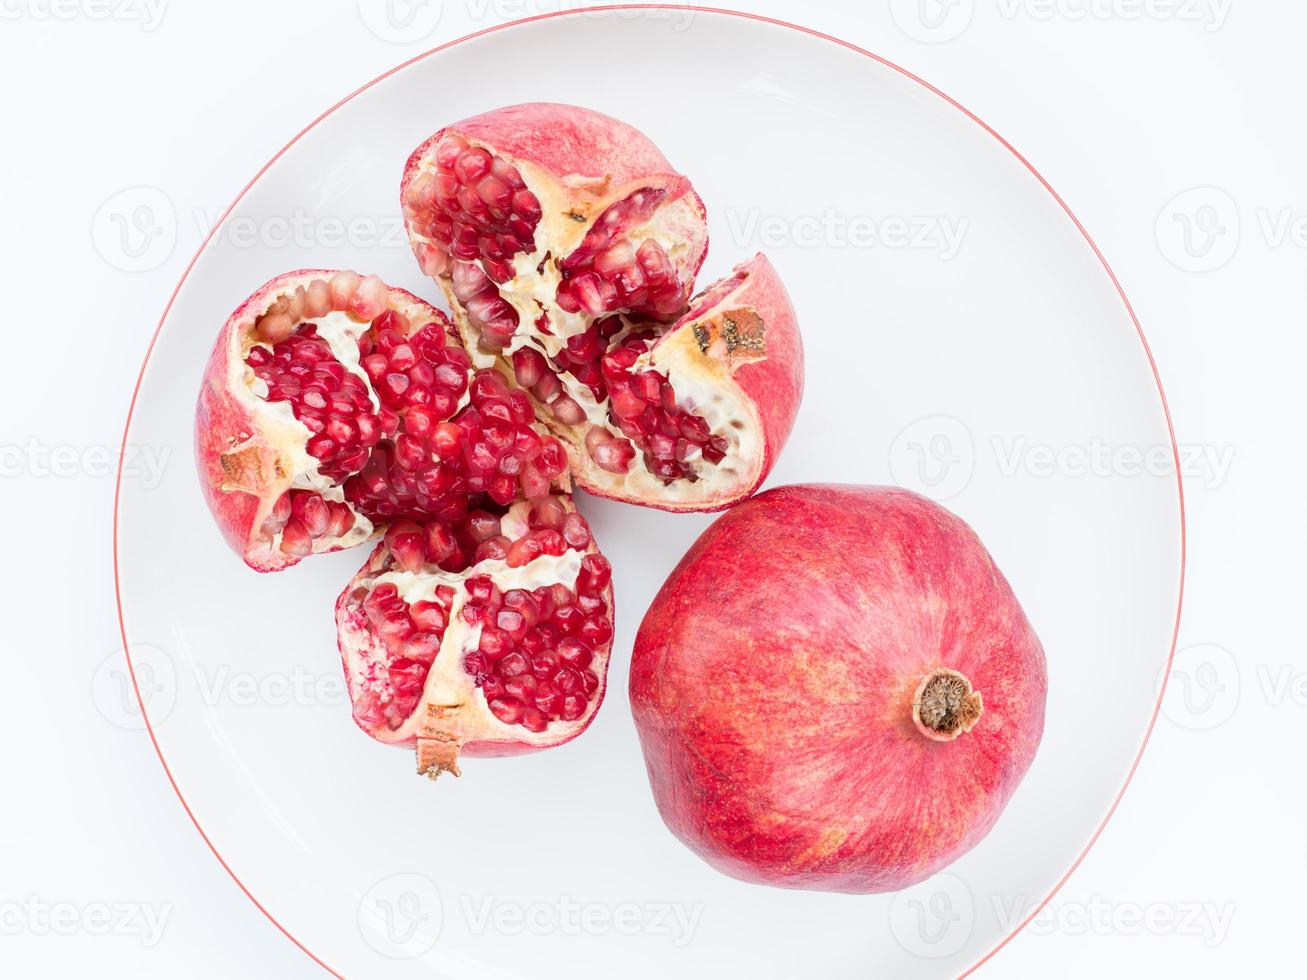 die reife Granatapfelfrucht auf einem weißen Porzellanteller foto